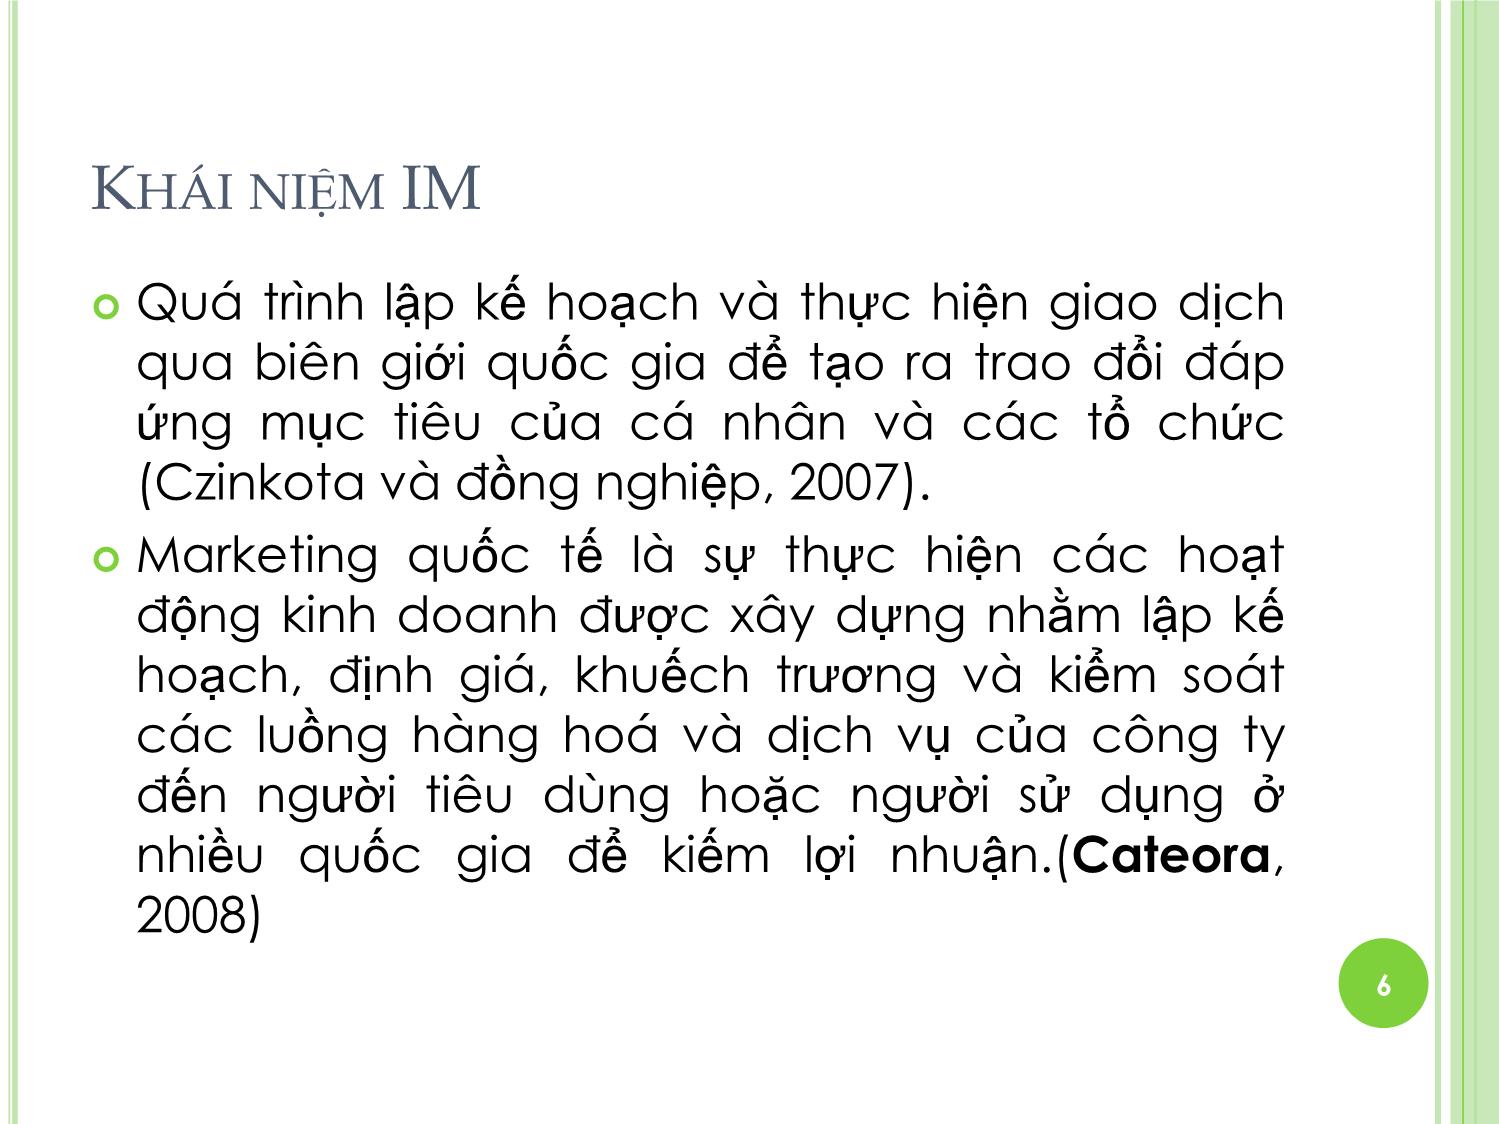 Bài giảng Marketing quốc tế - Chương 1: Tổng quan về Marketing quốc tế - Dương Thị Hoa trang 6